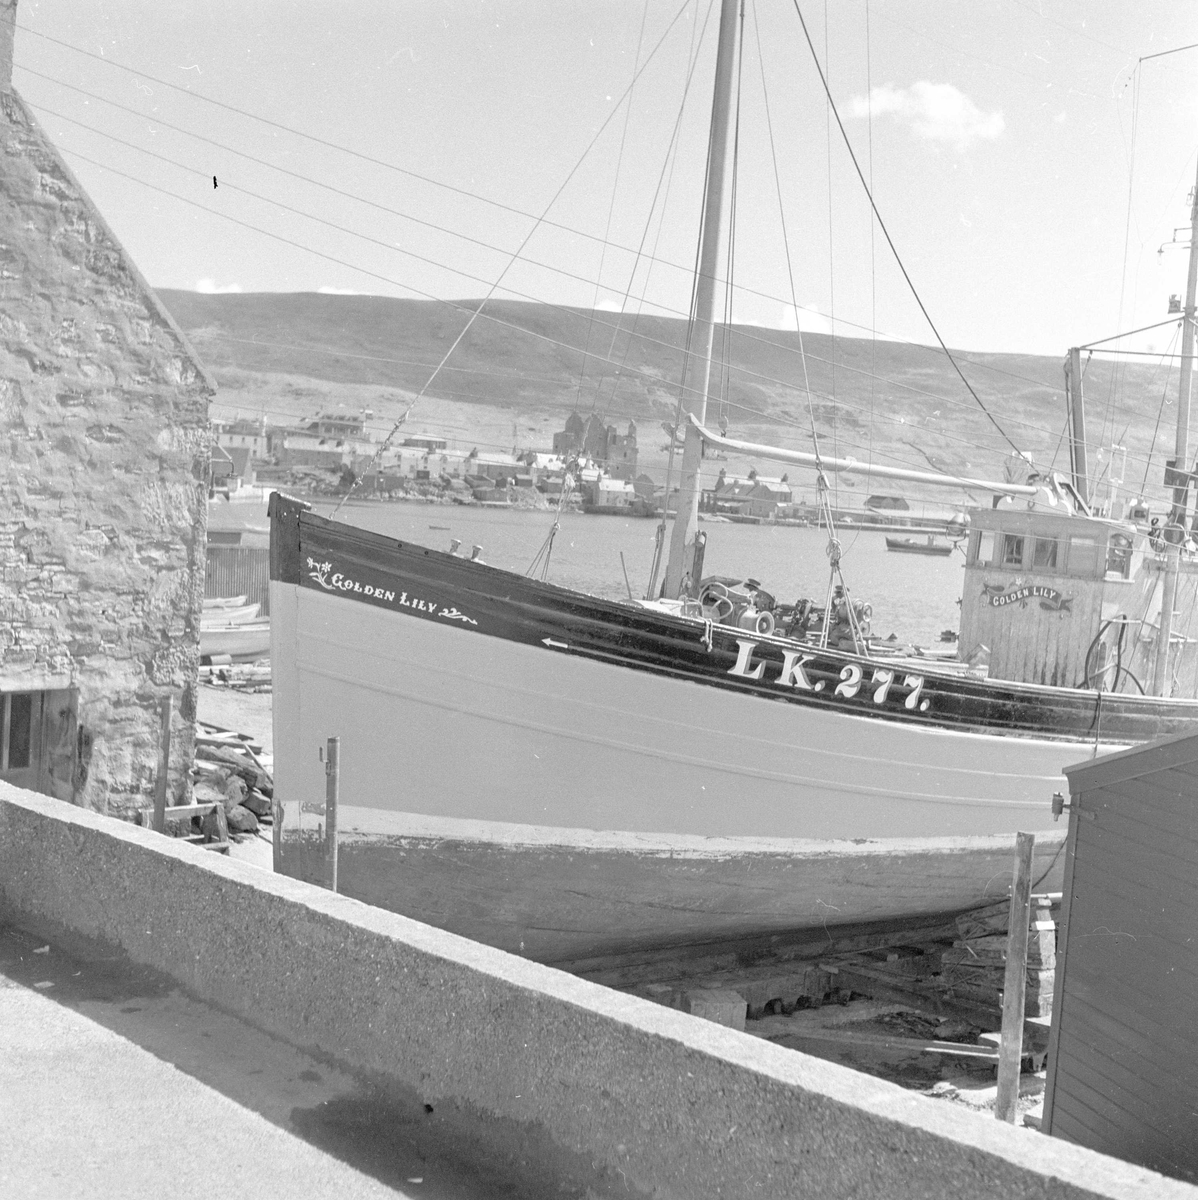 Pigghåfiske på Shetland.
Shetland, 14-22. mai 1958, fiskeskøyta ved kai.